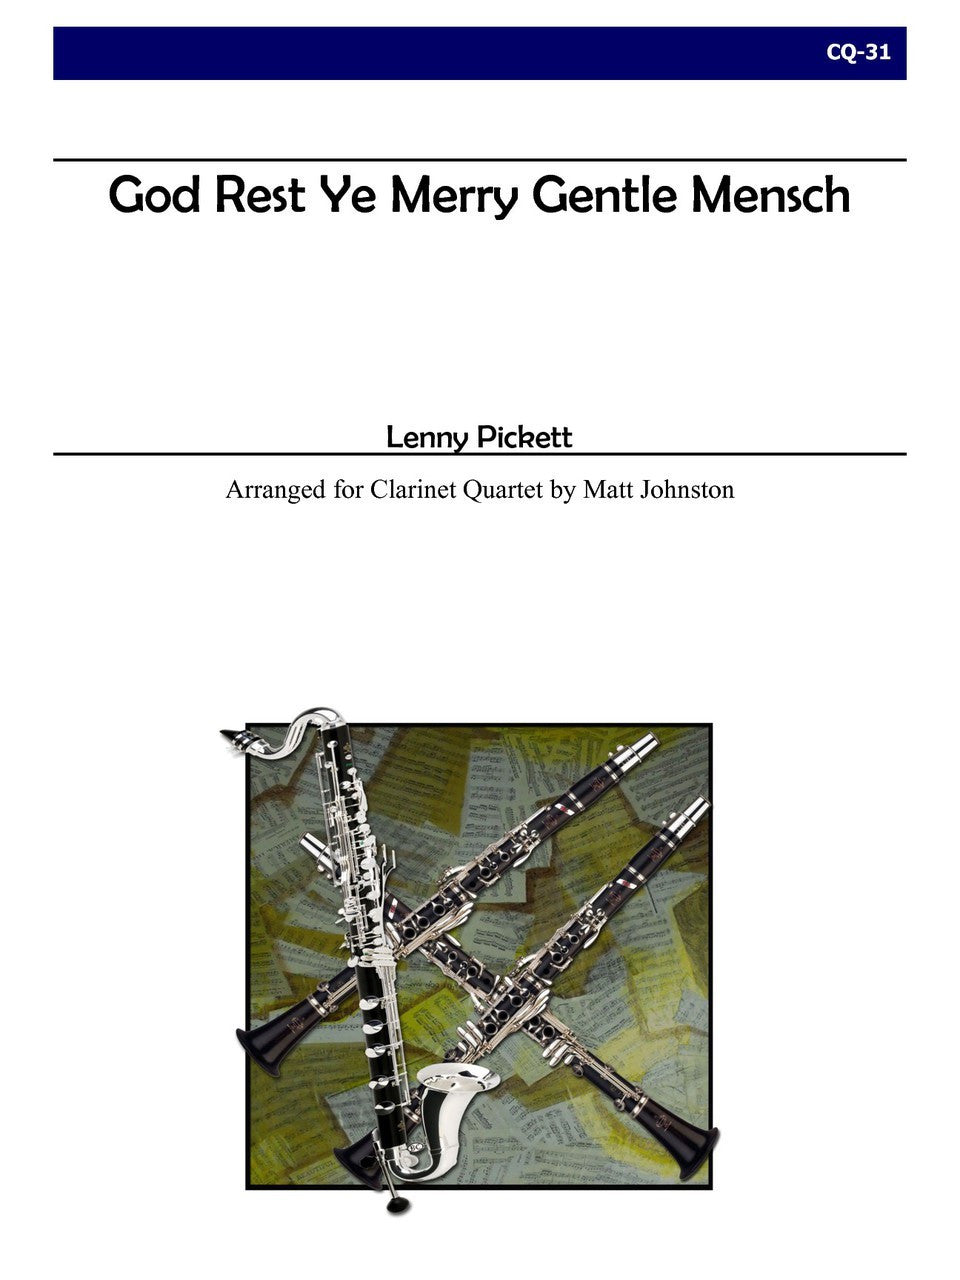 Pickett (arr. Matt Johnston) - God Rest Ye Merry Gentle Mensch for Clarinet Quartet and Drumset